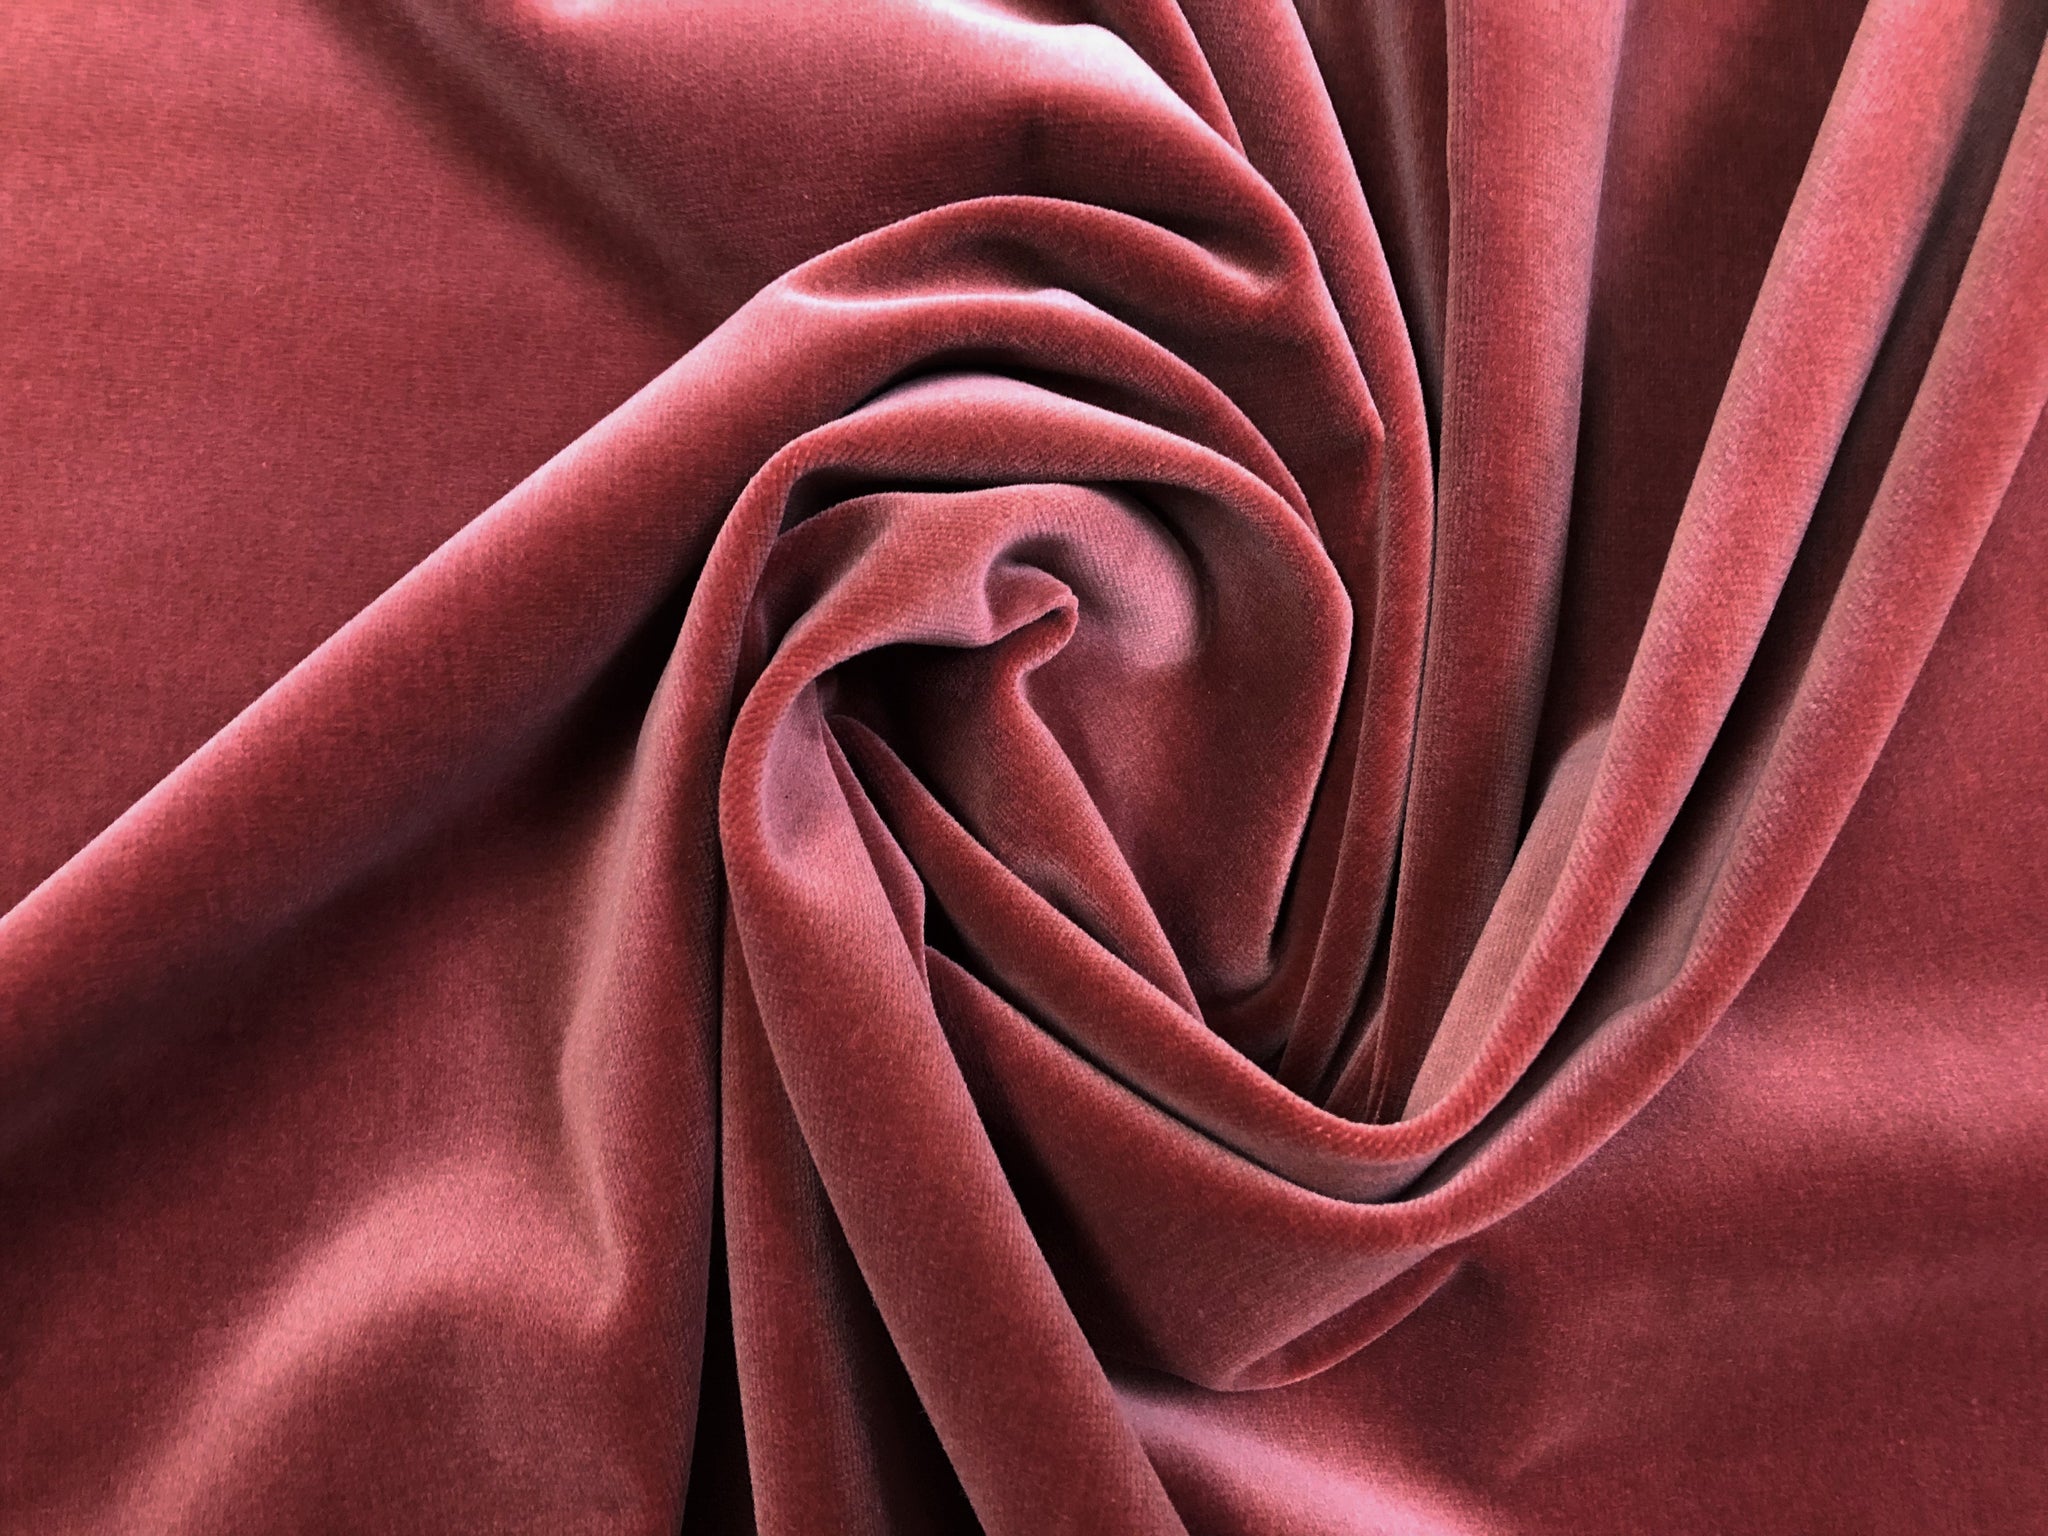 10 yards Velvet Fabric Roll - Dusty Rose/Mauve– CV Linens